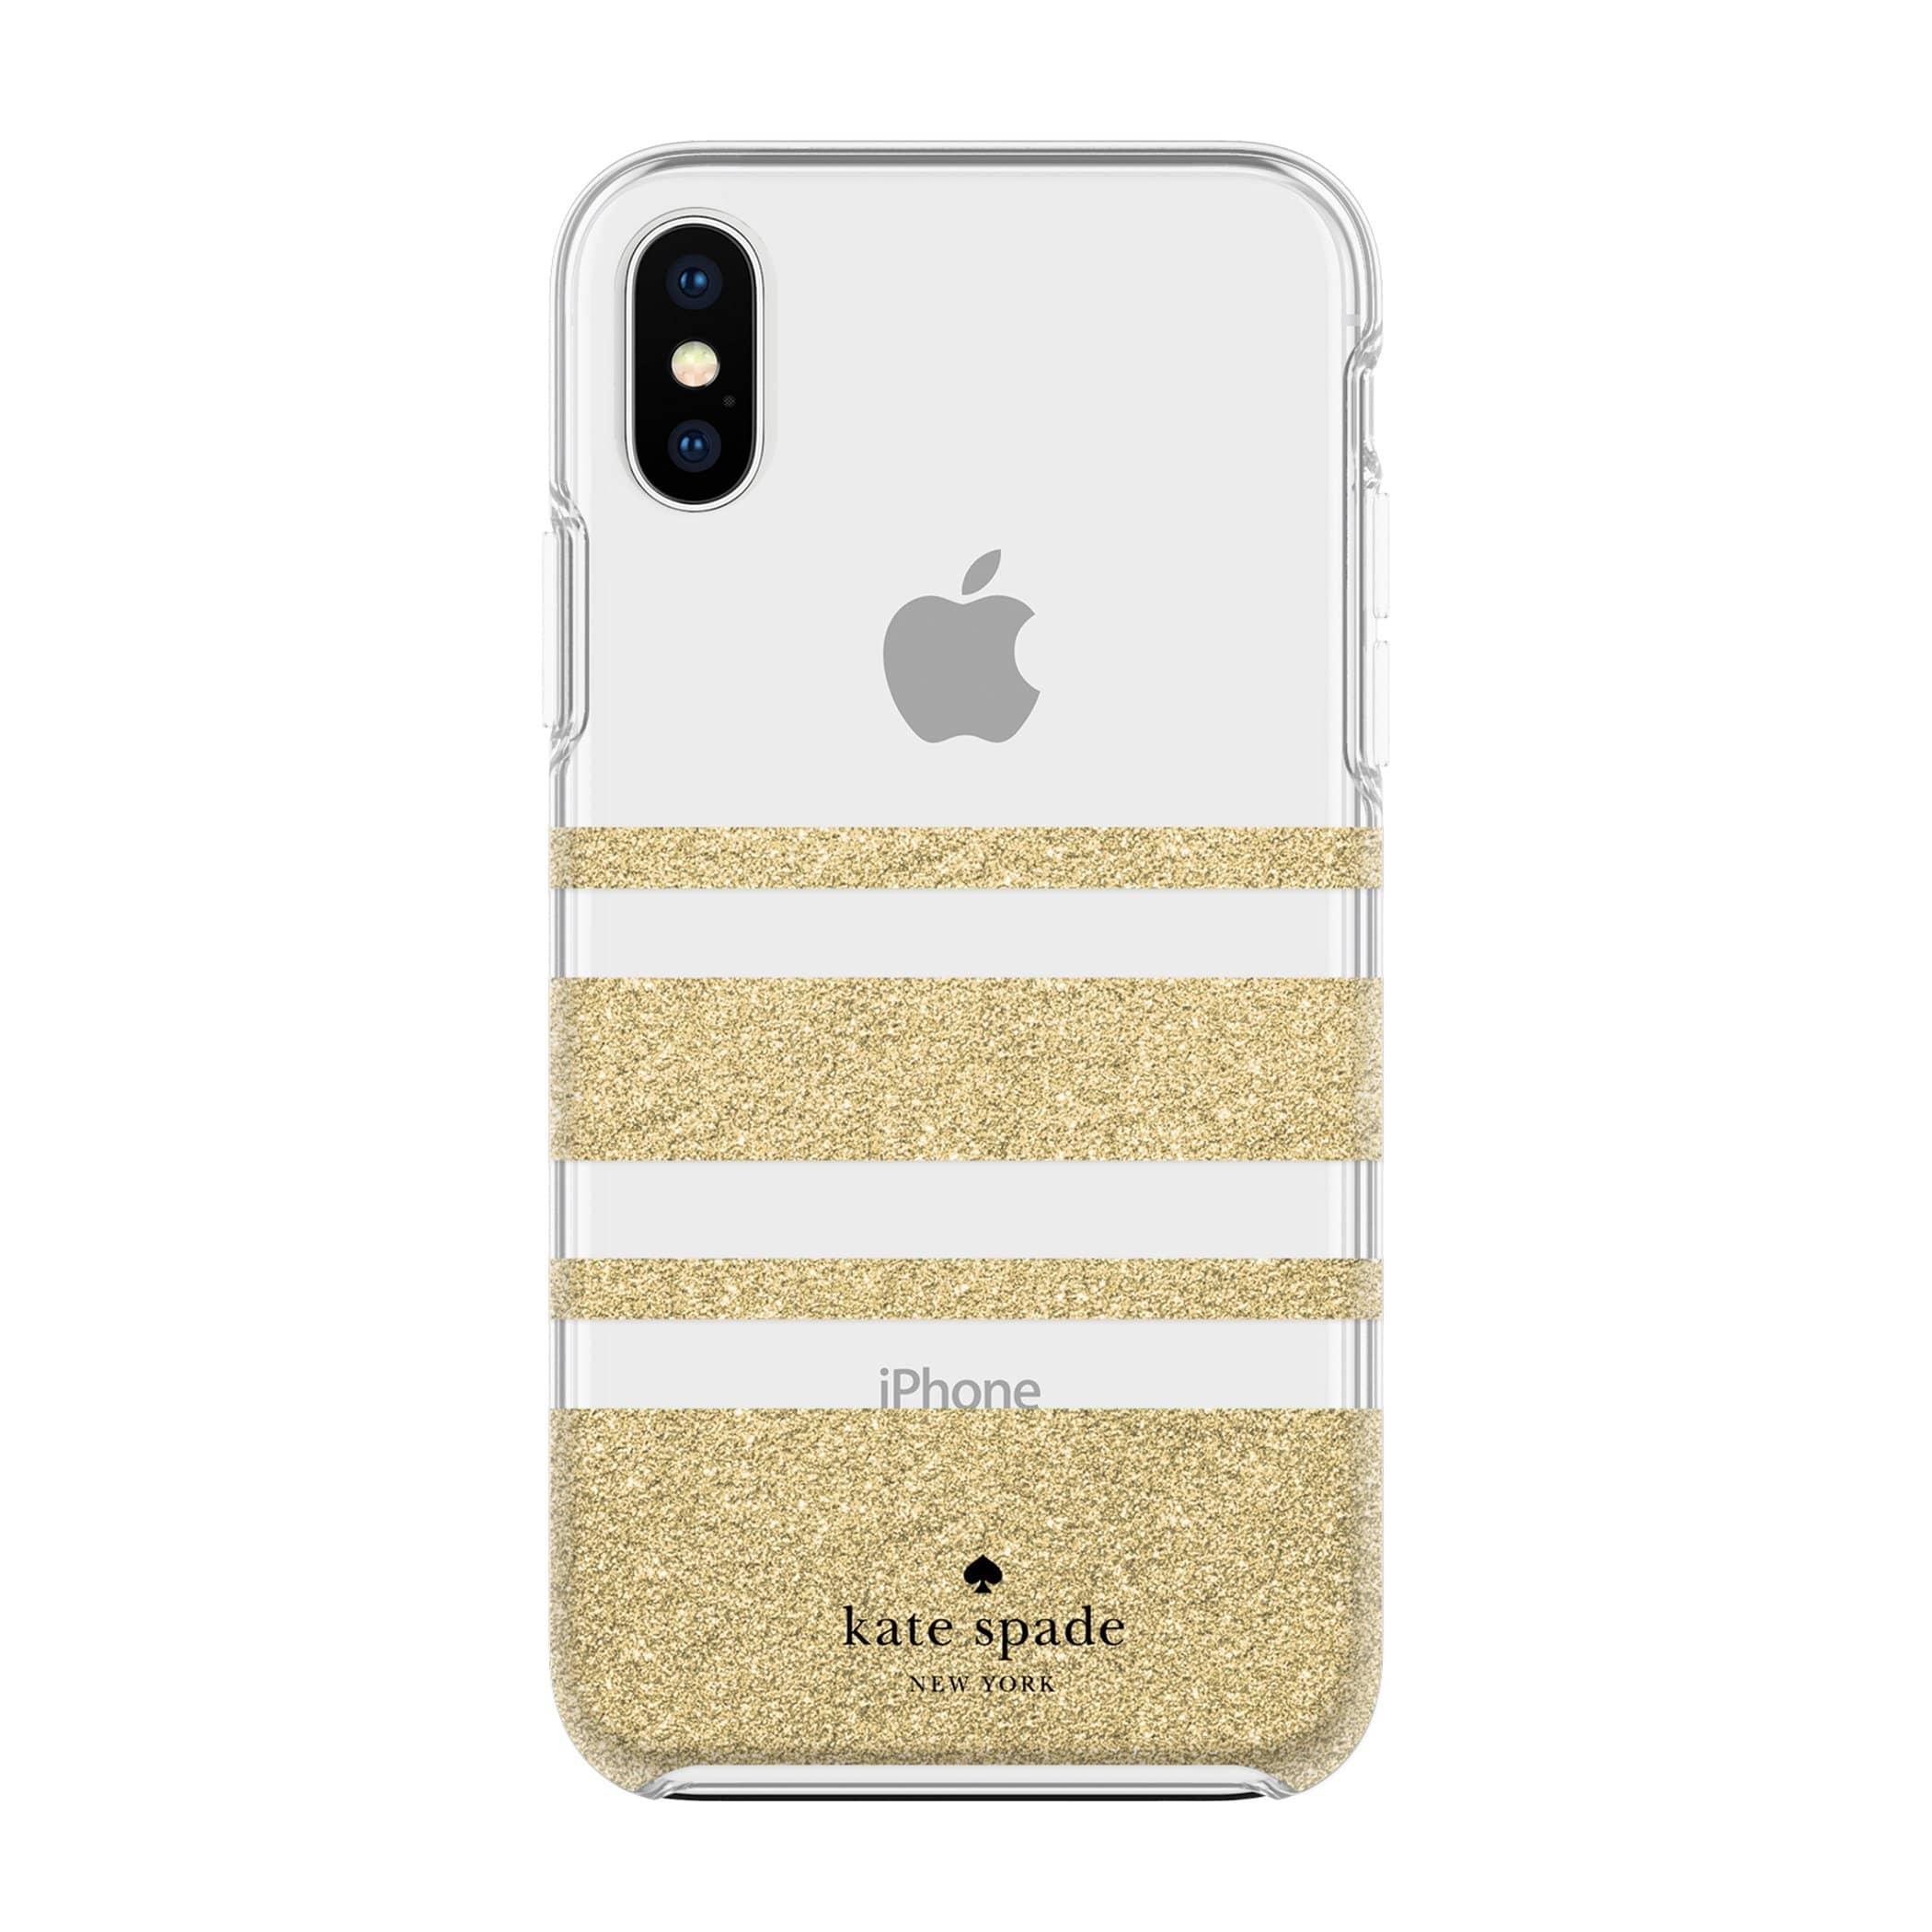 كفر حماية آيفون KATE SPADE NEW YORK Charlotte Stripe Gold Glitter / Clear for iPhone XS Max